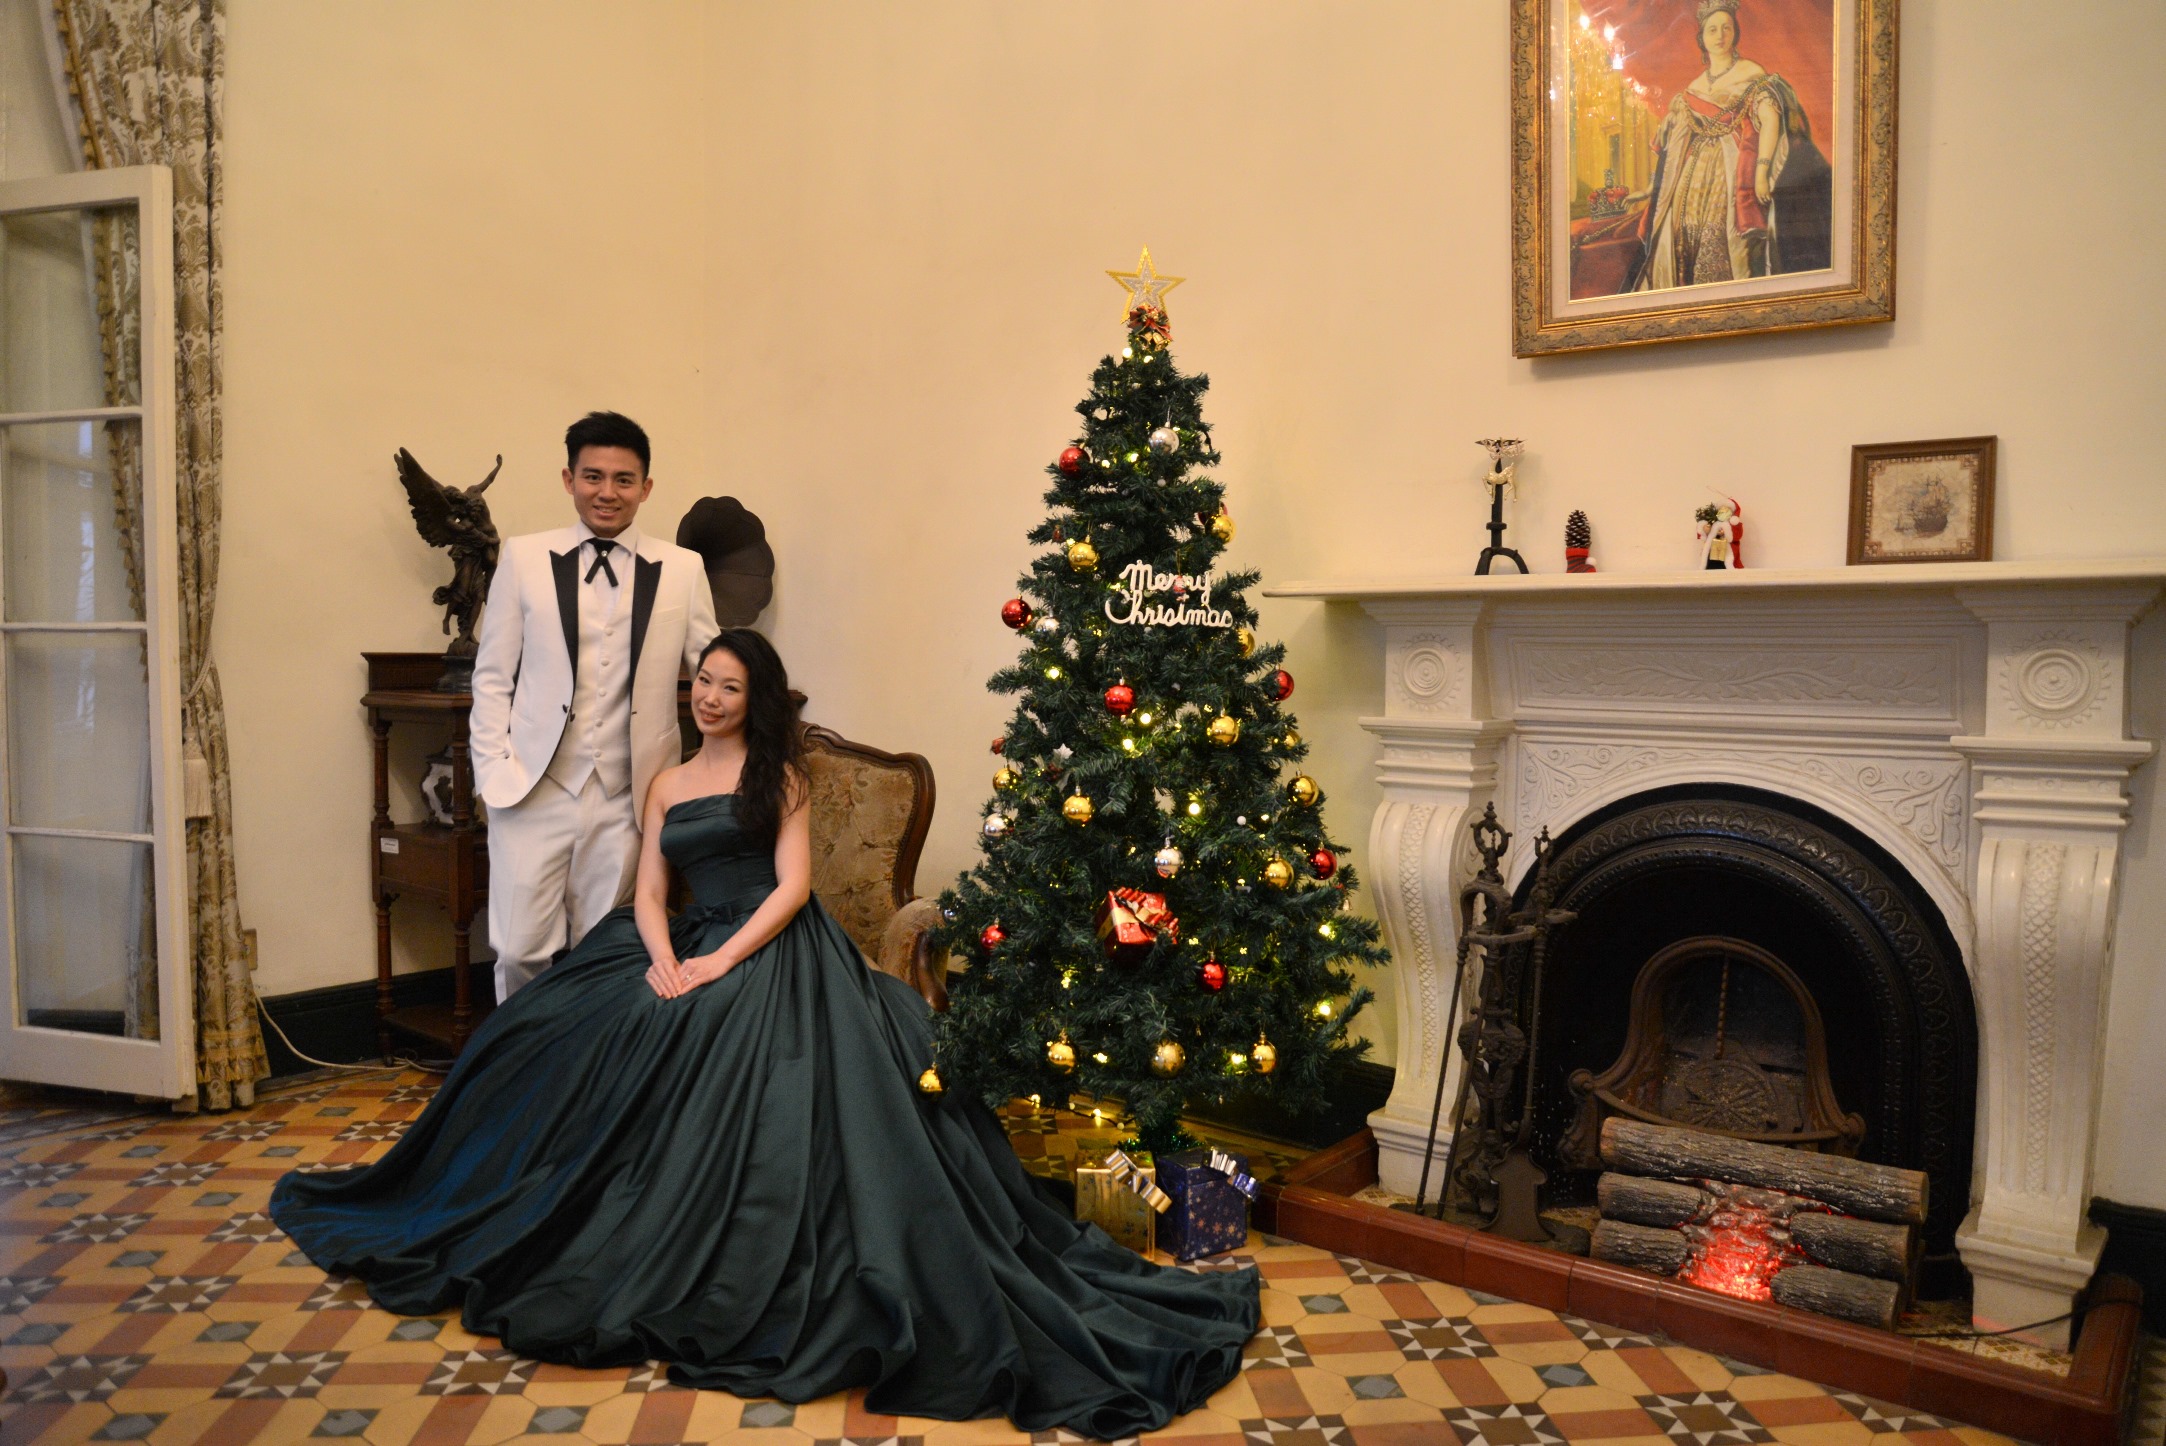 耶誕節即將到來，官邸的壁爐旁也設置耶誕樹，有濃濃的節慶氛圍。